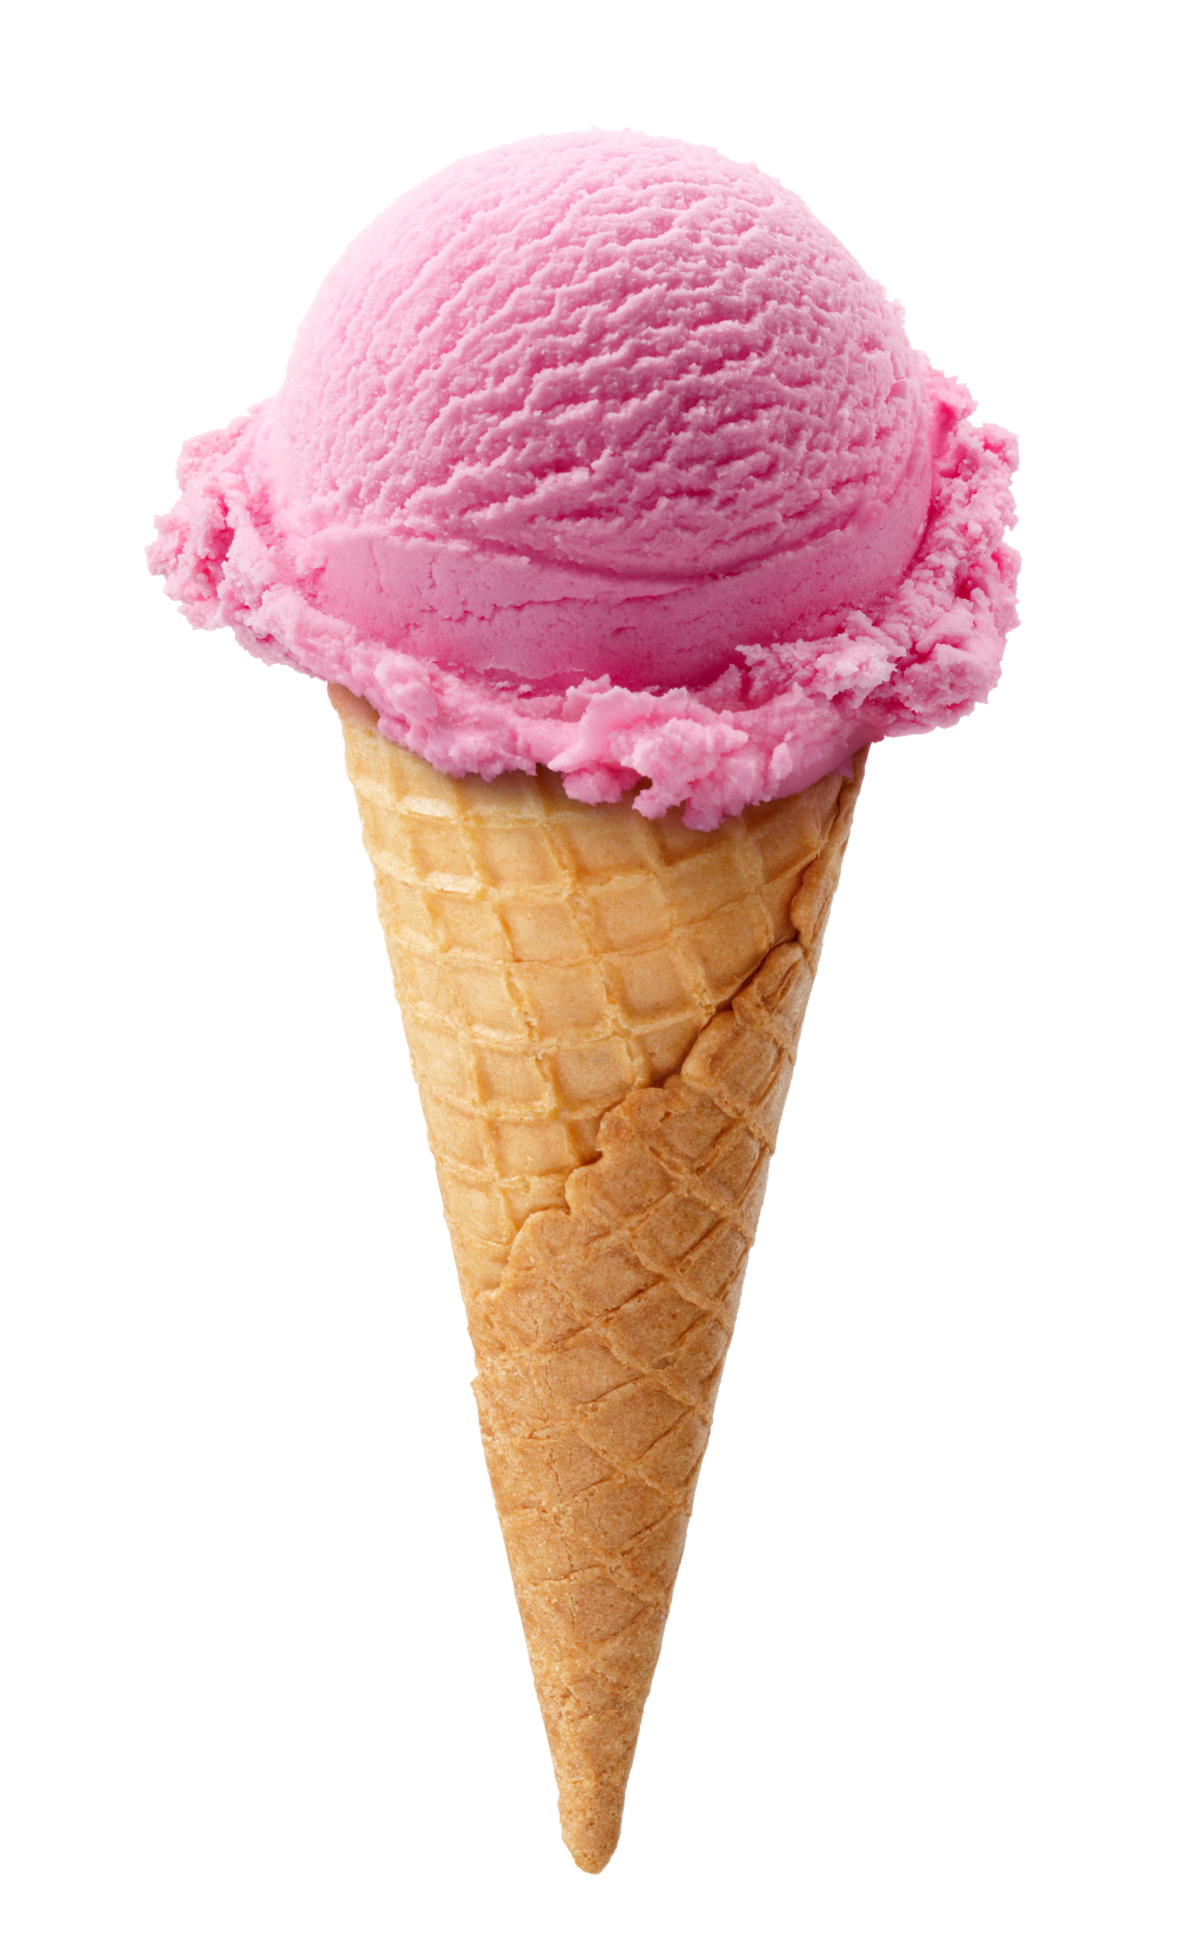 دانلود عکس بستنی قیفی توت فرنگی رایگان و بالاترین کیفیت 